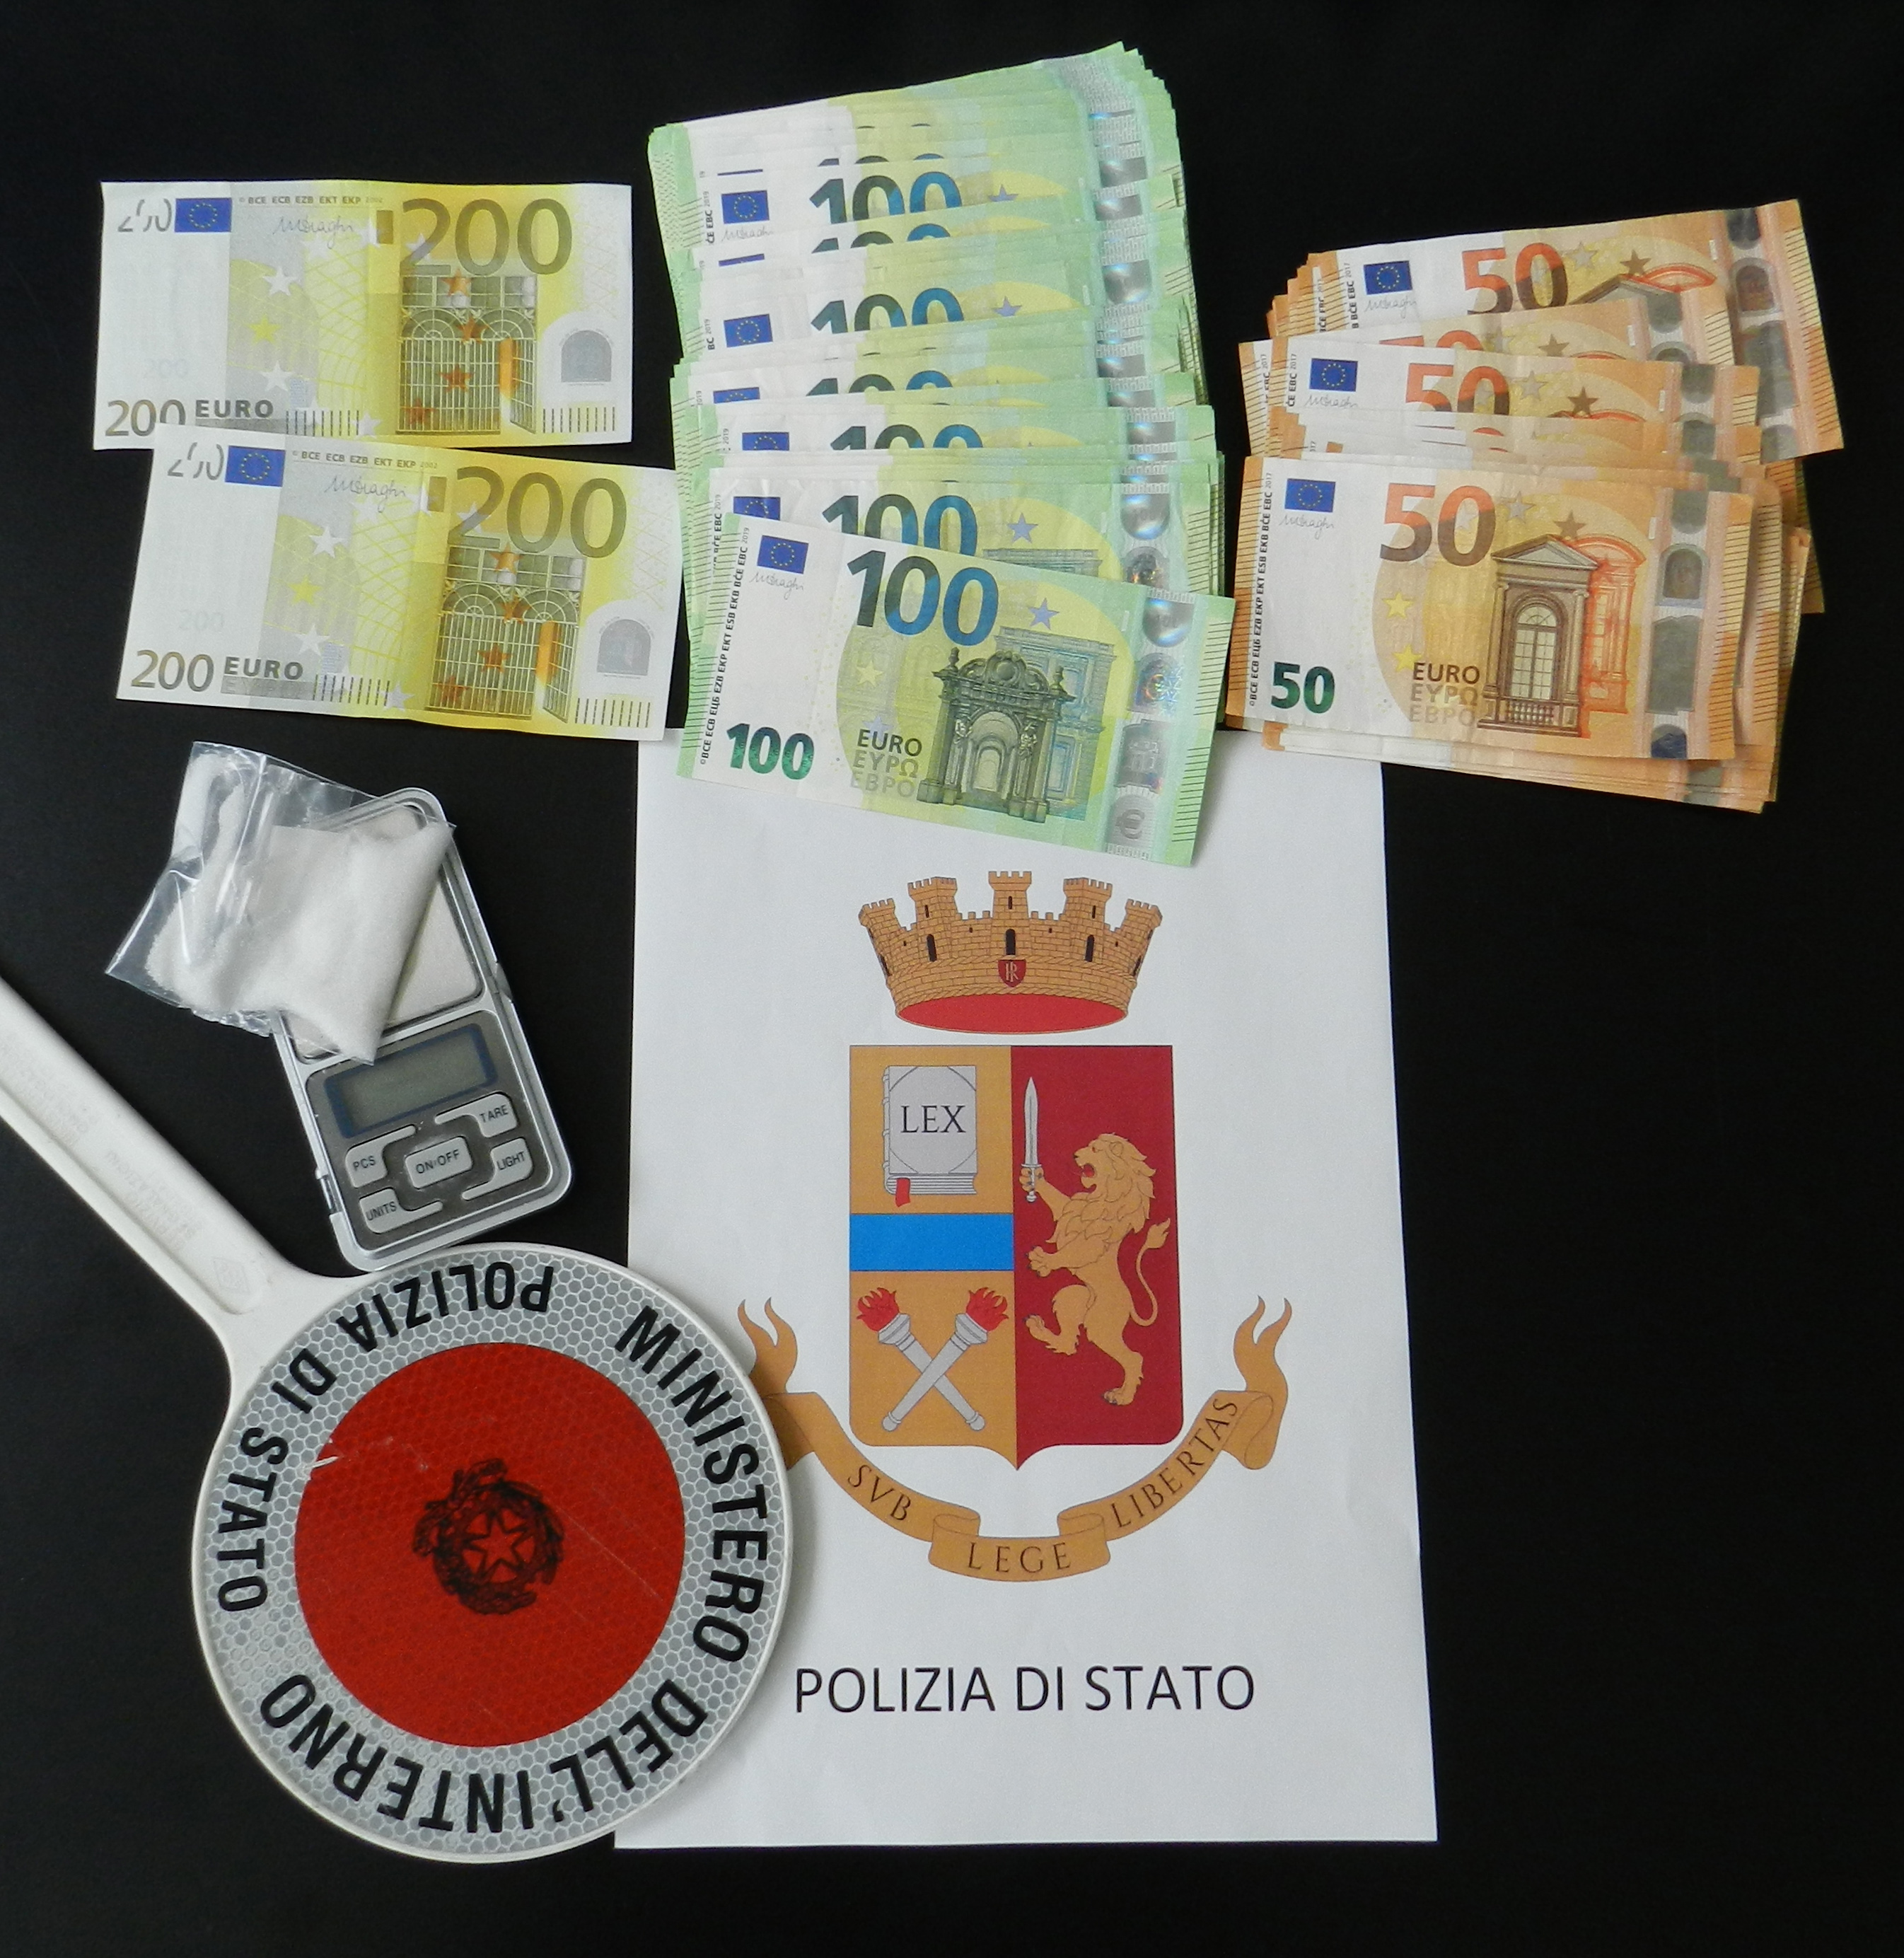 LA POLIZIA DI STATO SEQUESTRA 8800 EURO E COCAINA